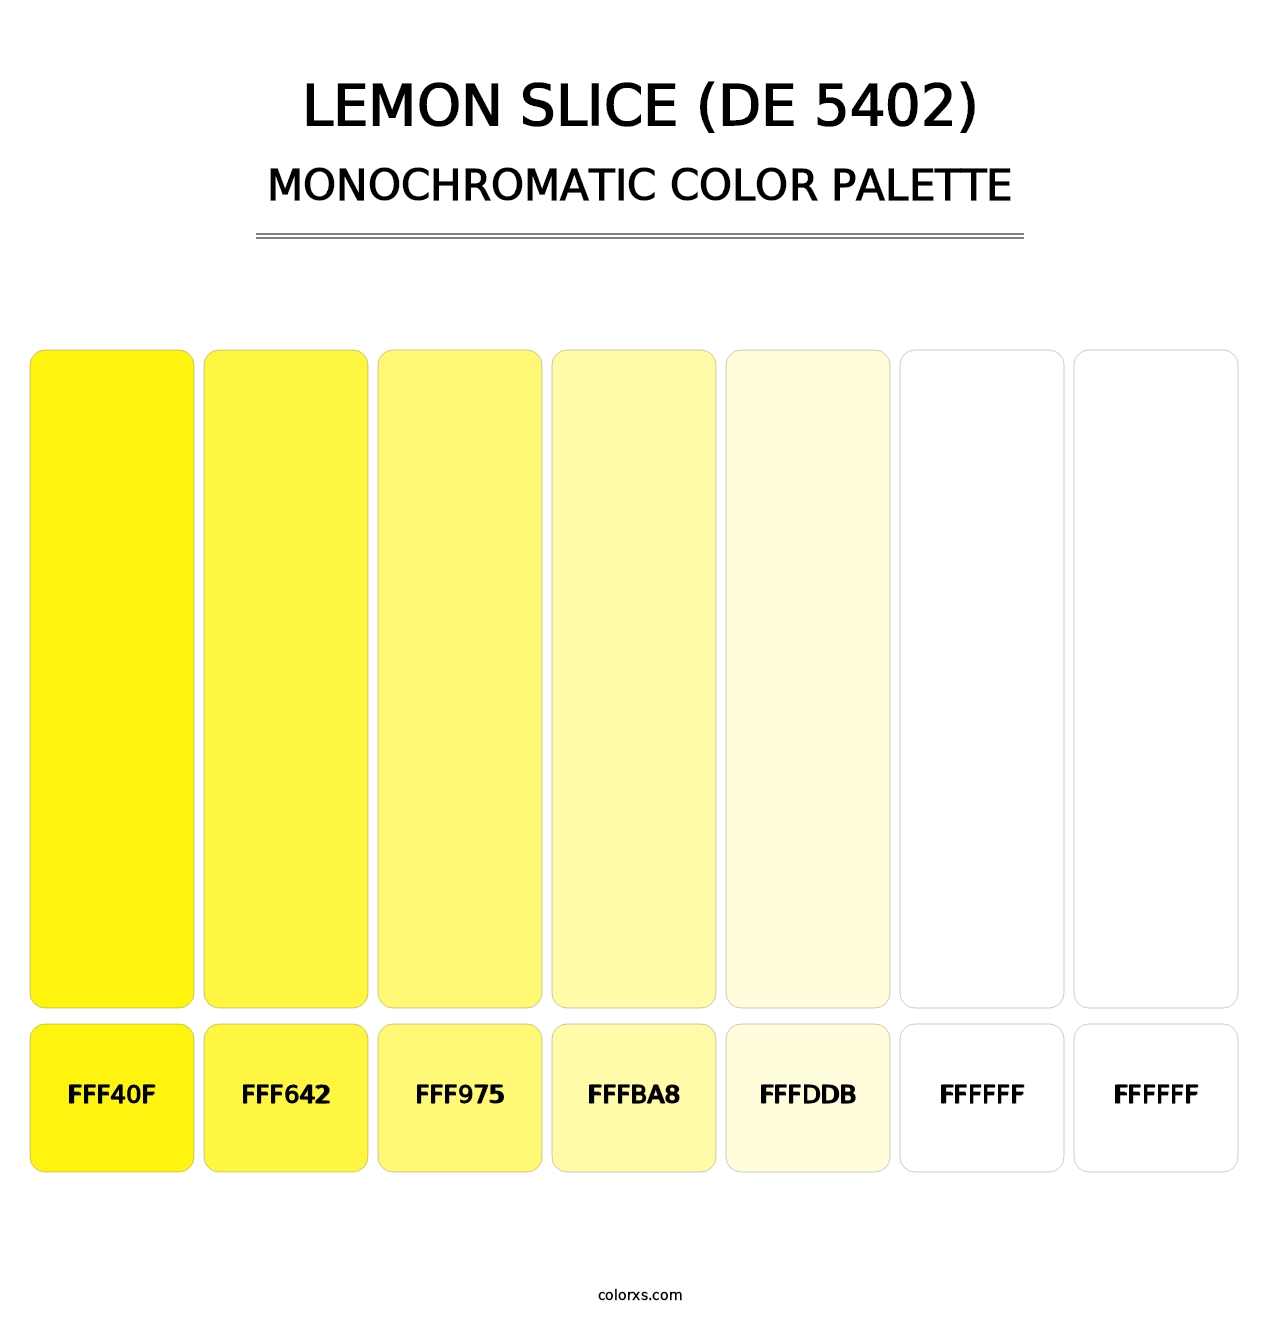 Lemon Slice (DE 5402) - Monochromatic Color Palette